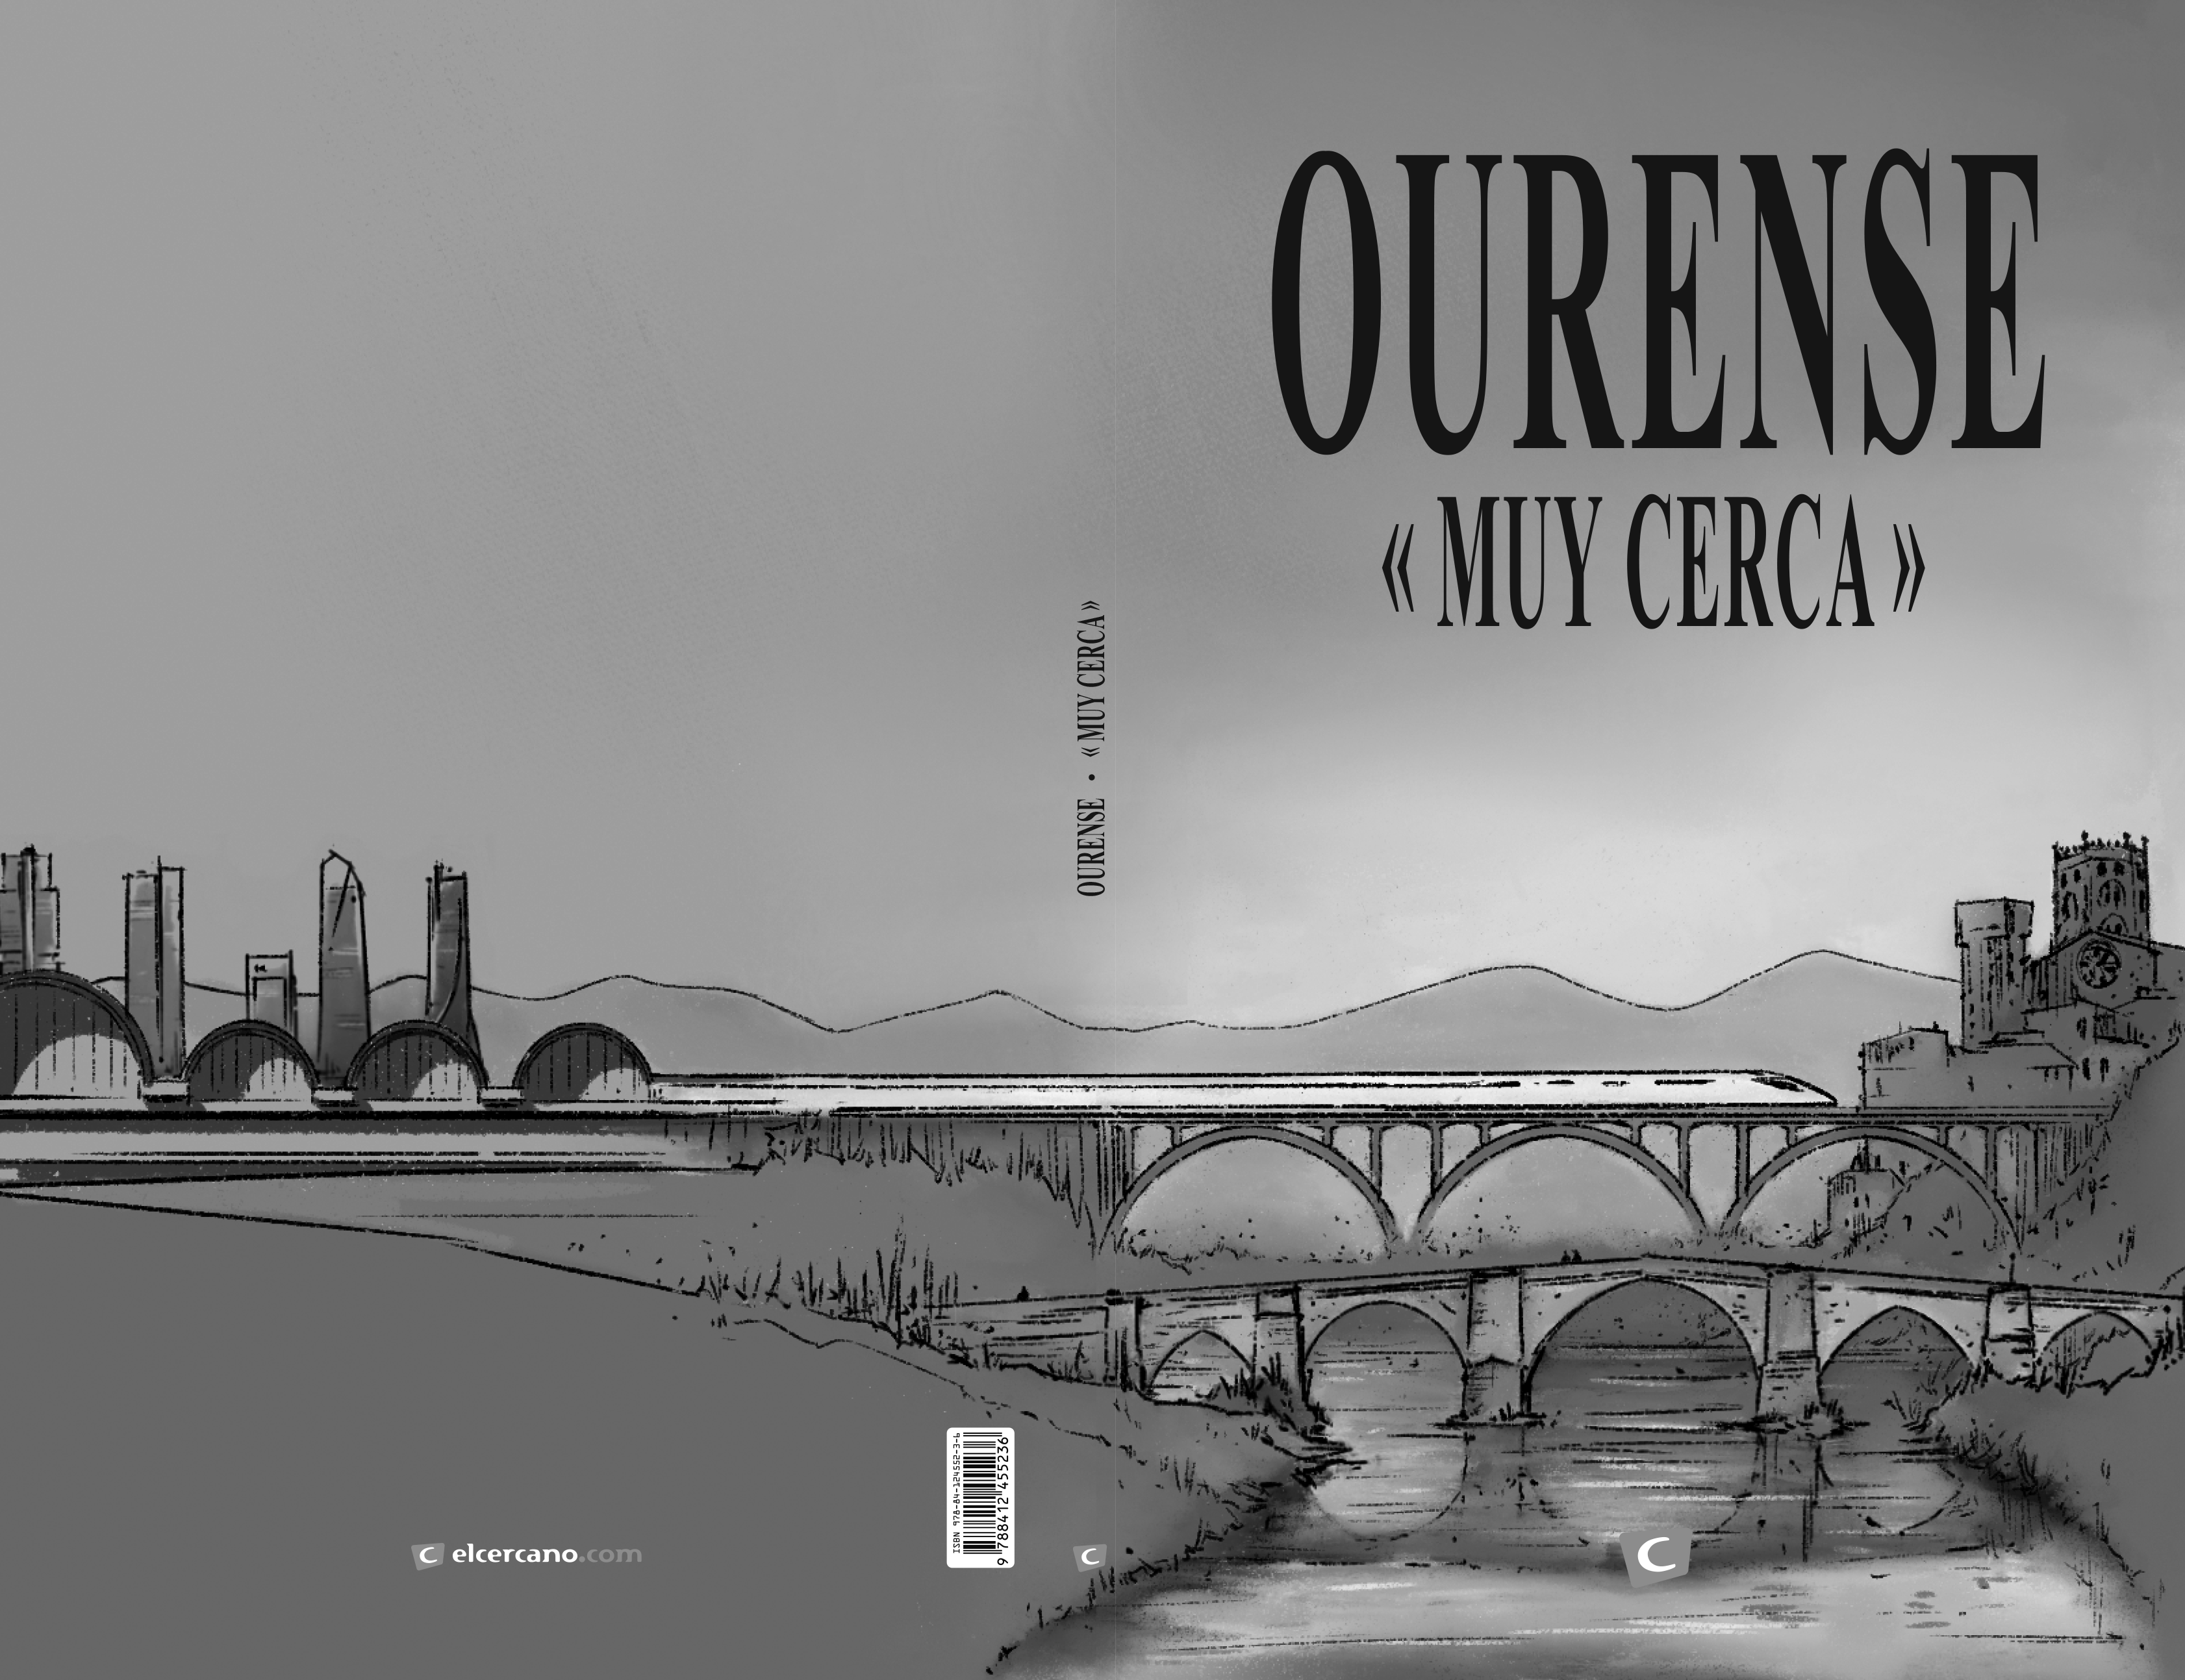 Presentación en Madrid de "Ourense muy cerca"